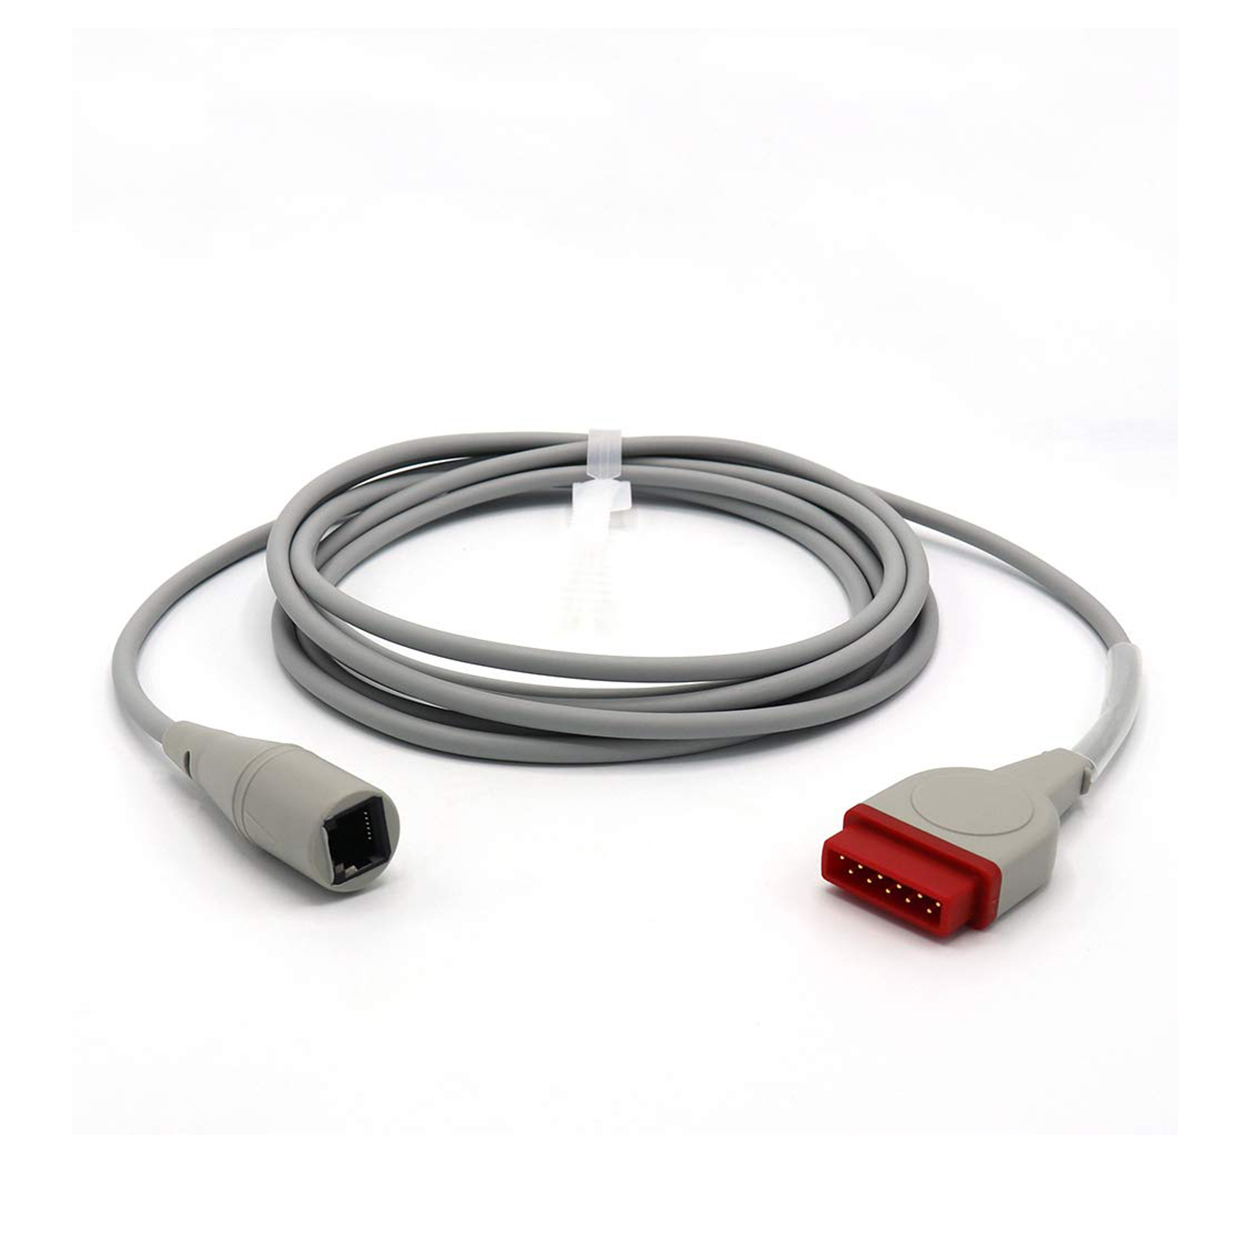 GE Medex - Abbot IBP adaptor cable